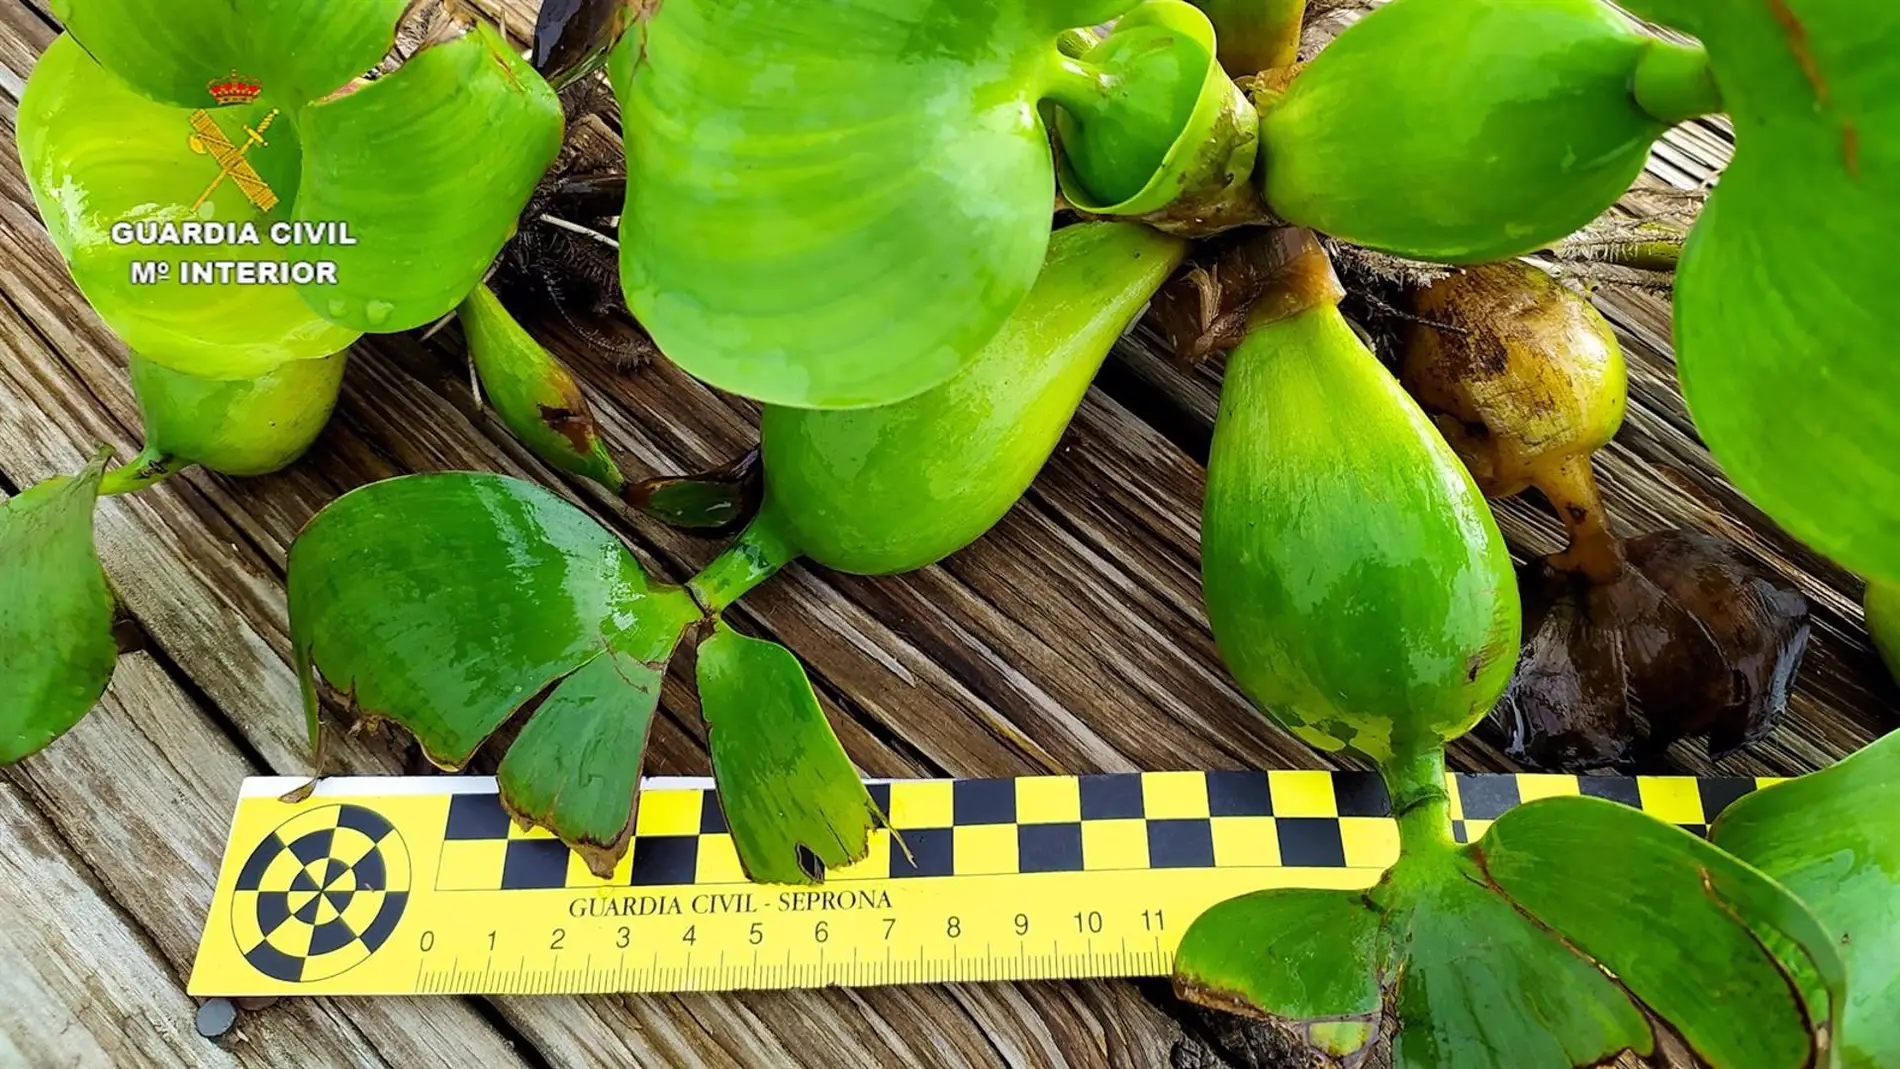 Especie invasora denominada jacinto de agua o camalote hallada por primera vez en la dársena del río Guadalquivir